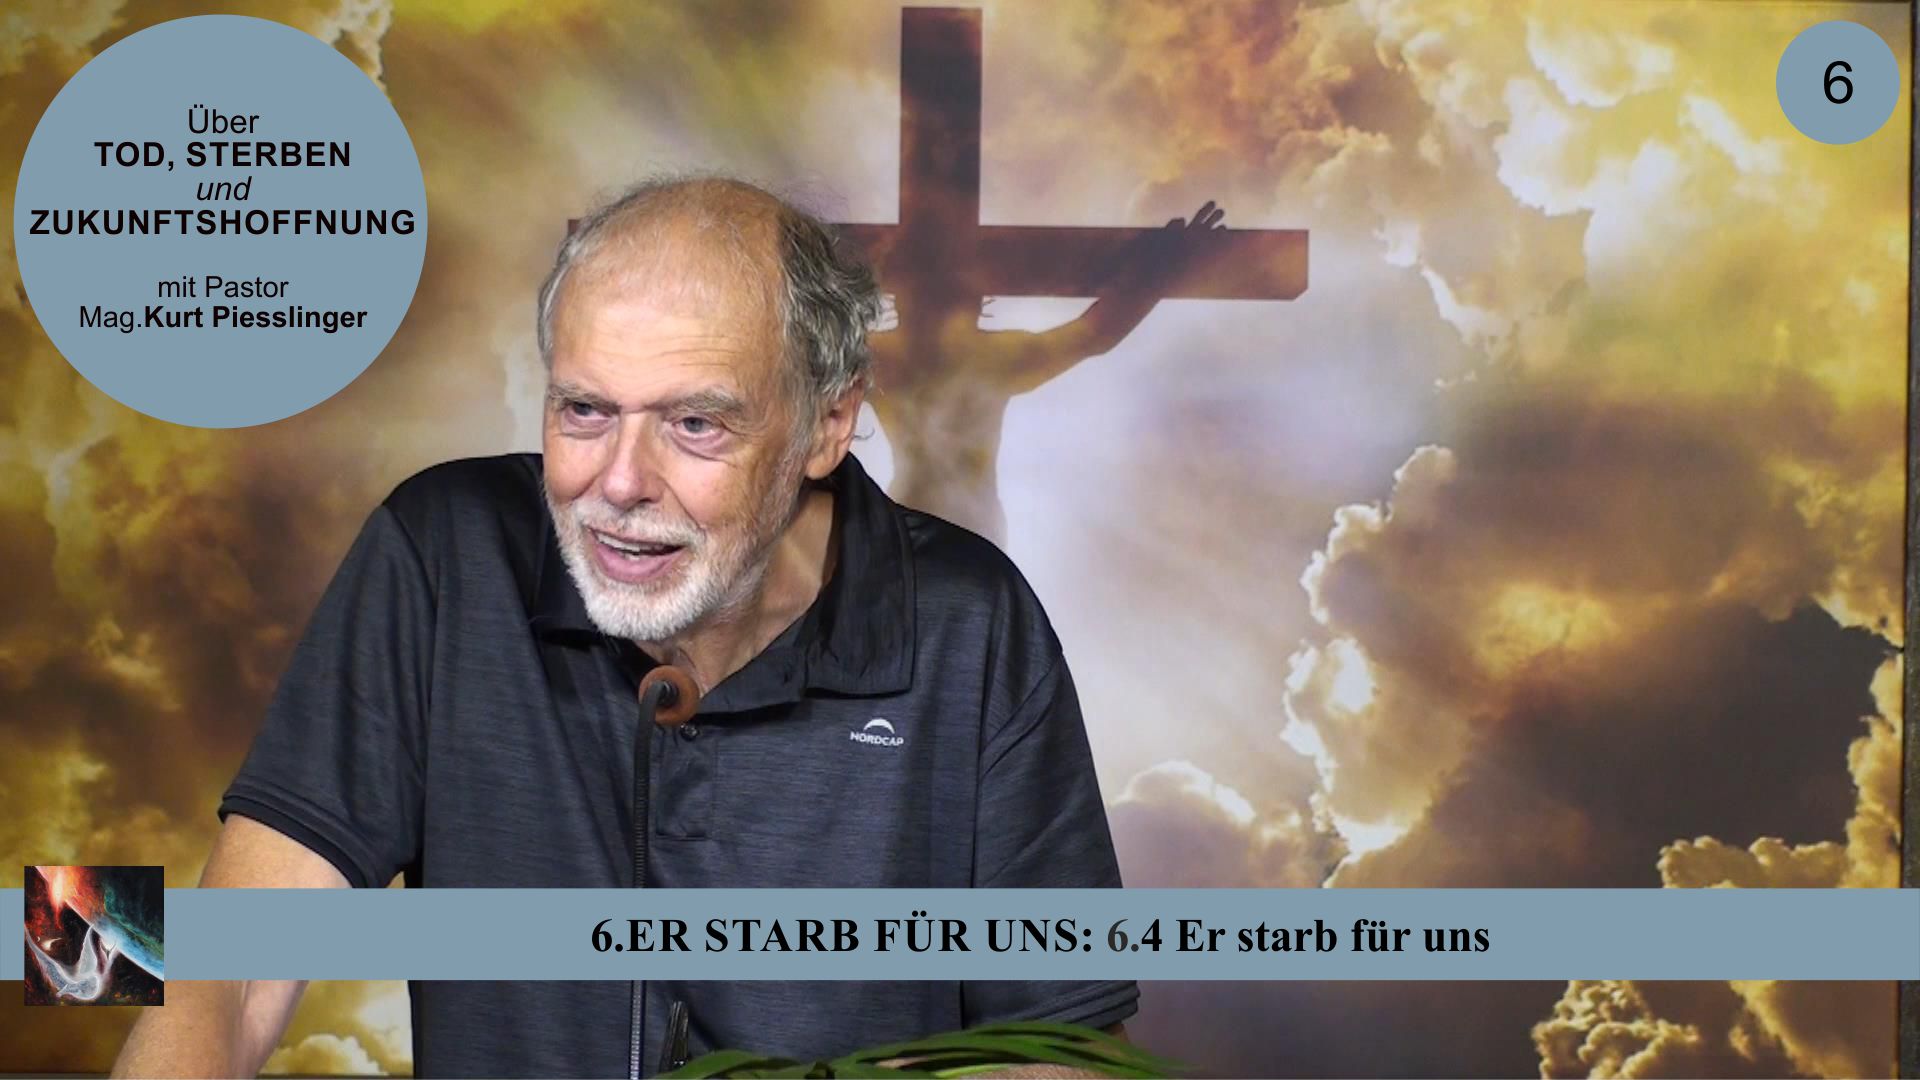 6.4 Er starb für uns – ER STARB FÜR UNS | Pastor Mag. Kurt Piesslinger